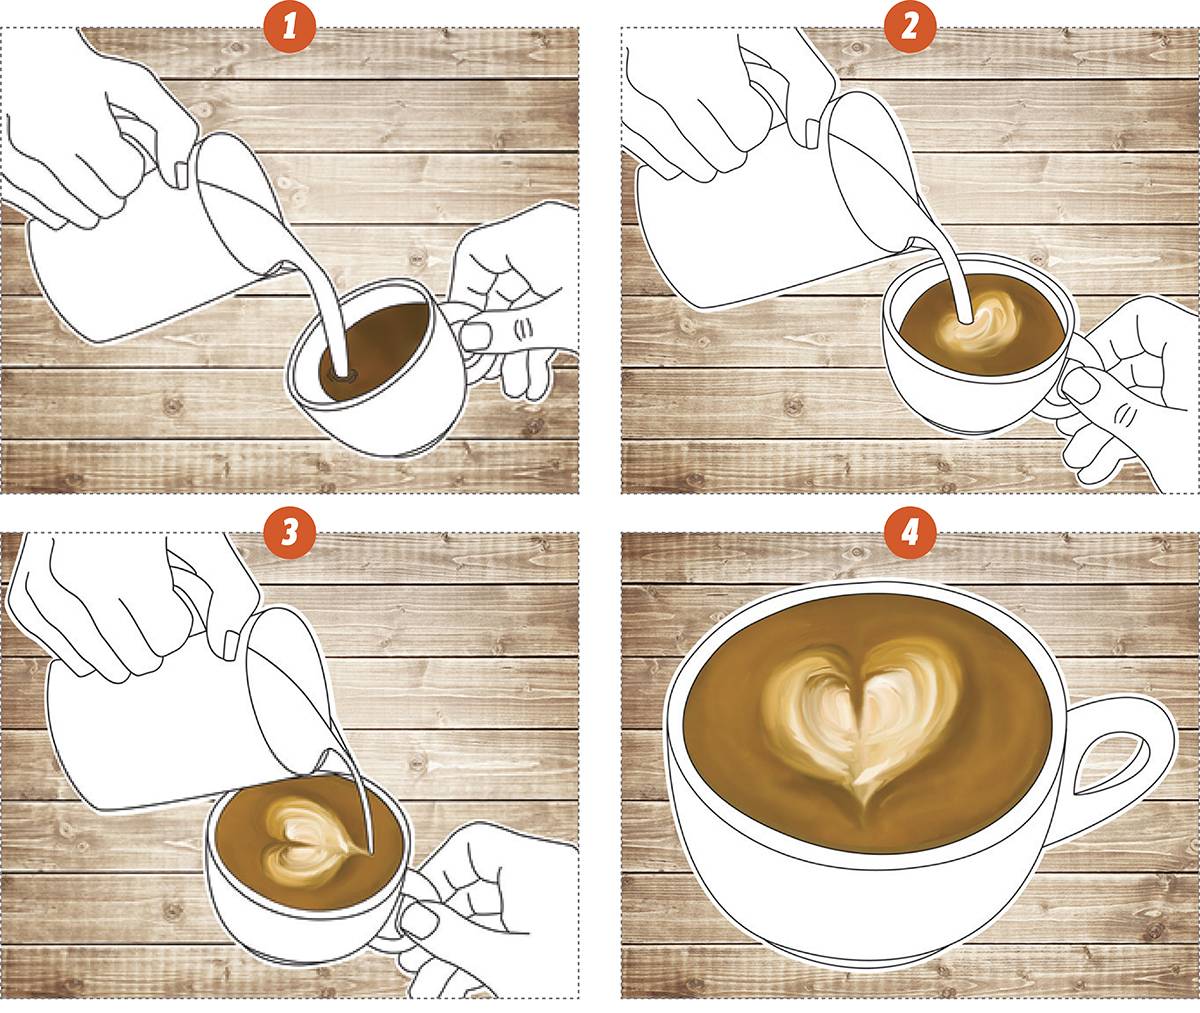 Рисуем чашку кофе акварелью: 2 варианта